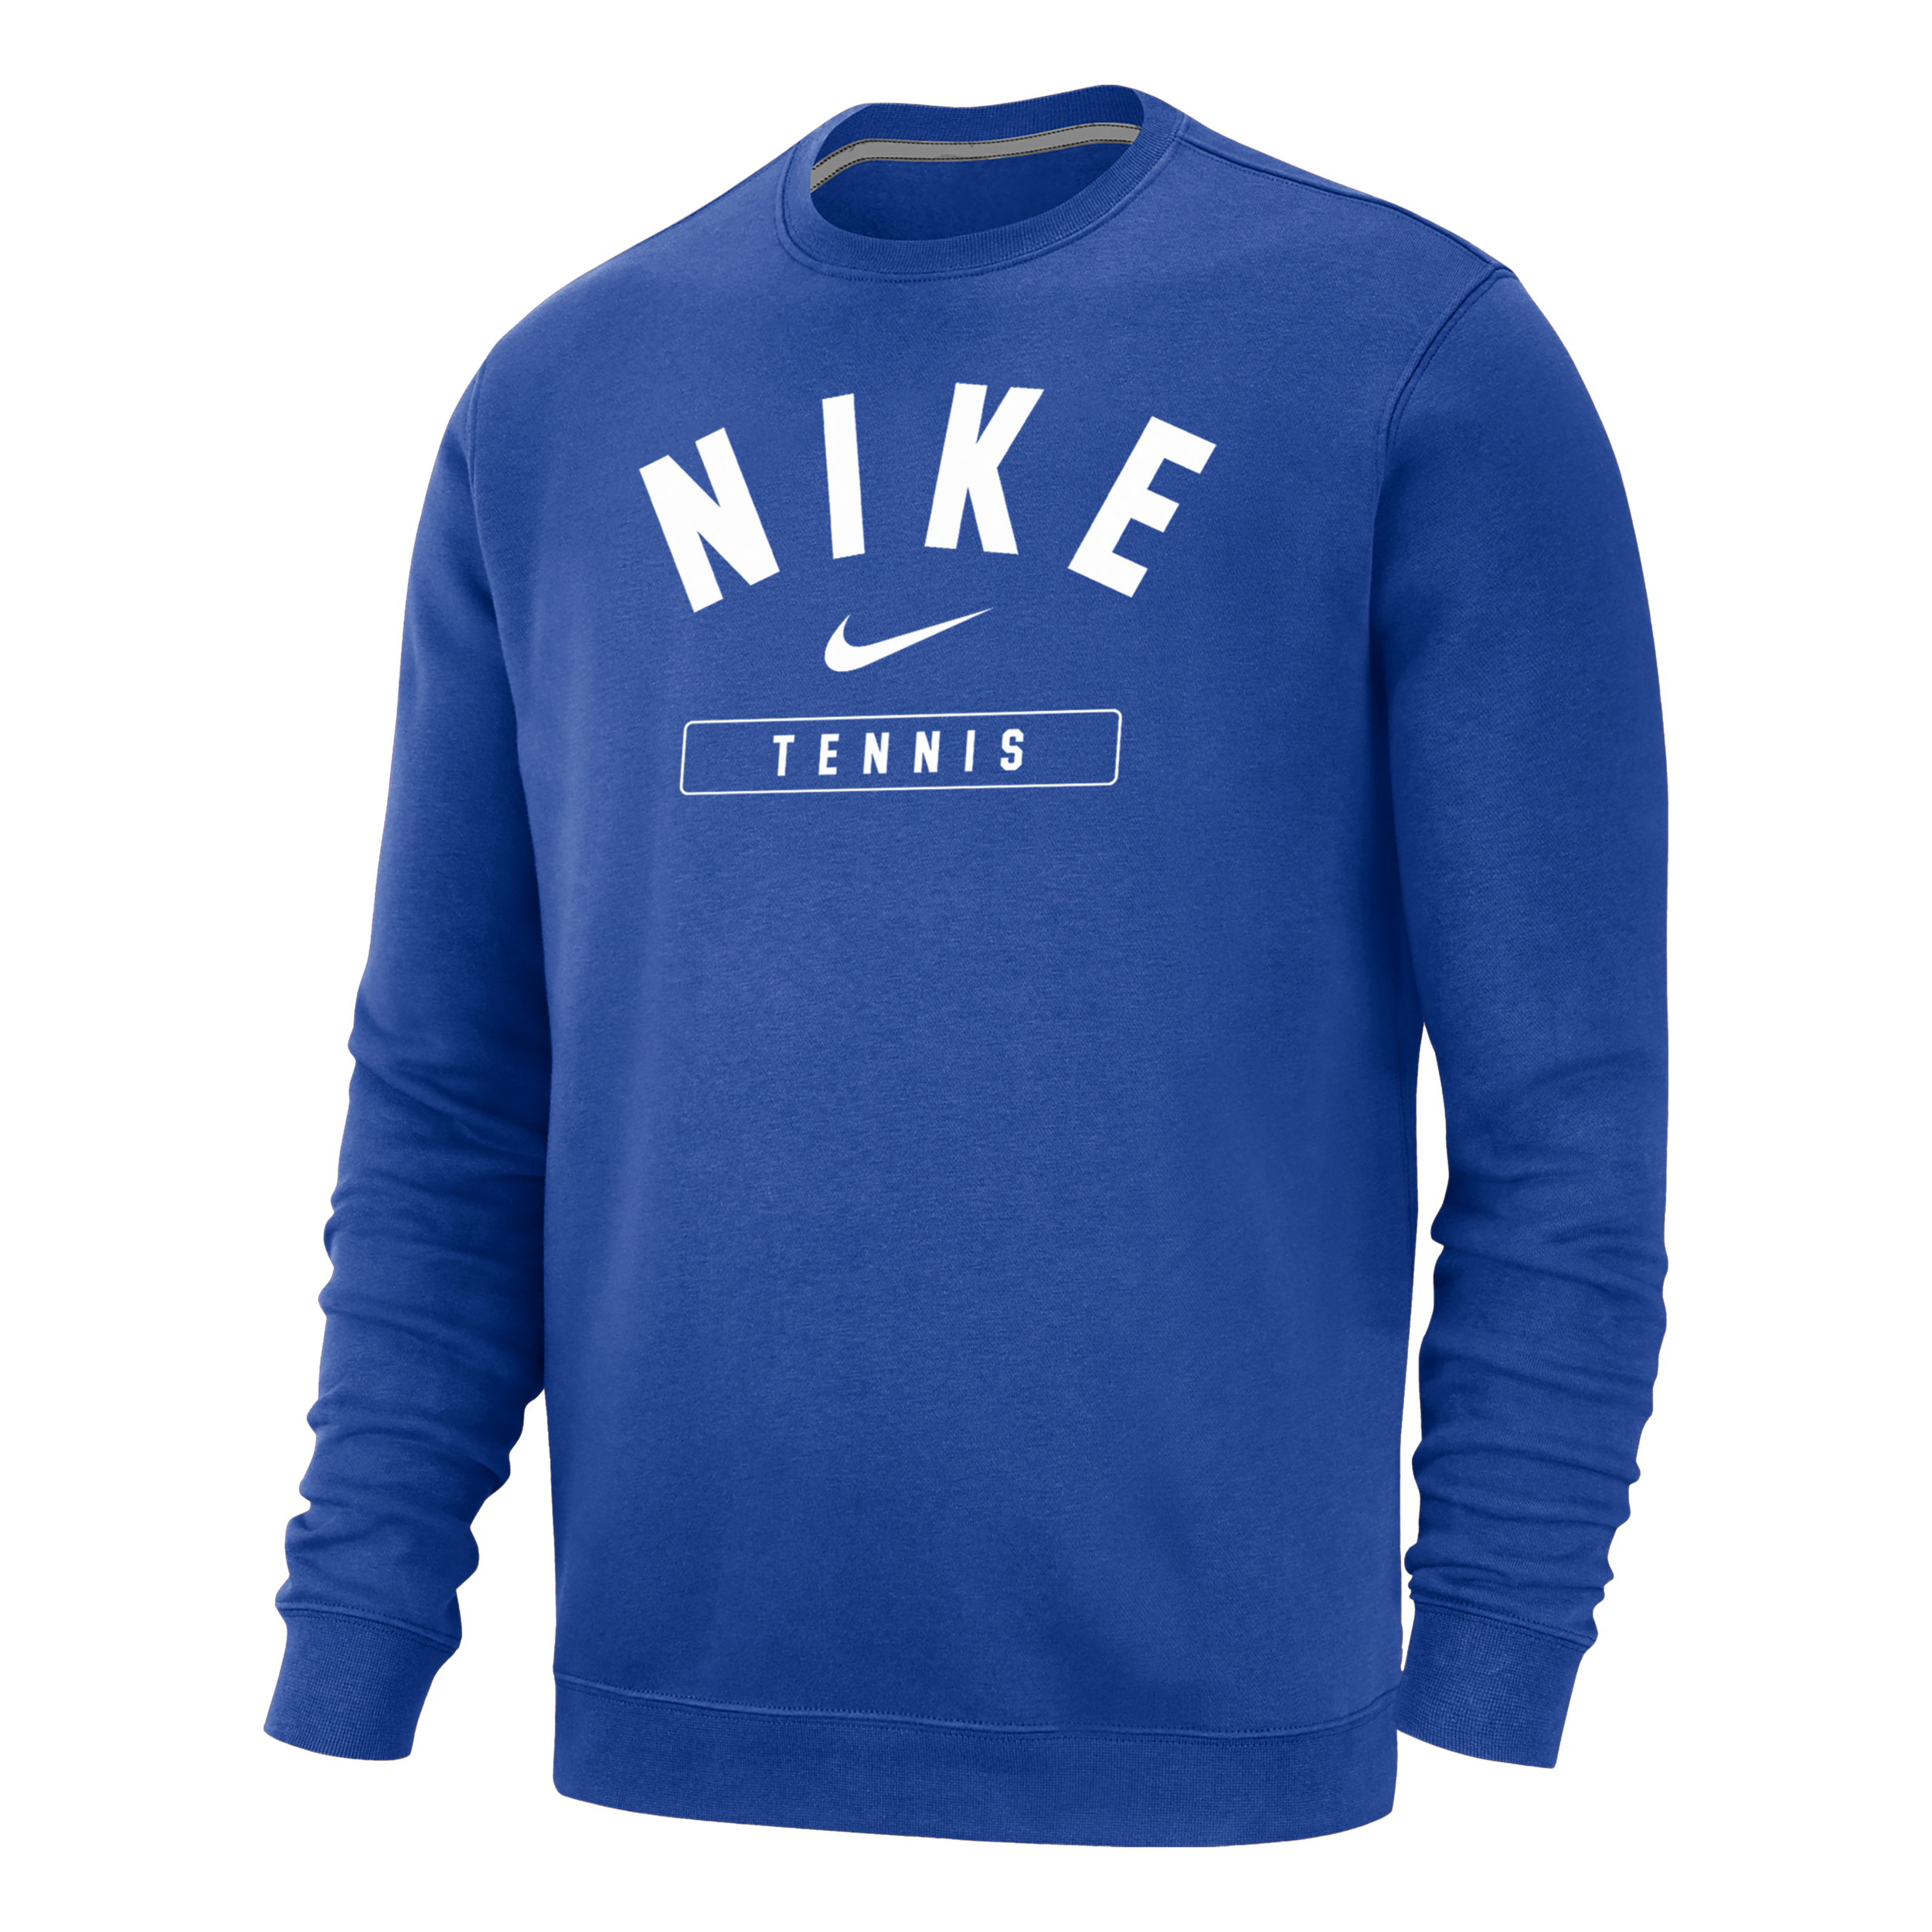 Nike Men's Tennis Crew-neck Sweatshirt In Blue